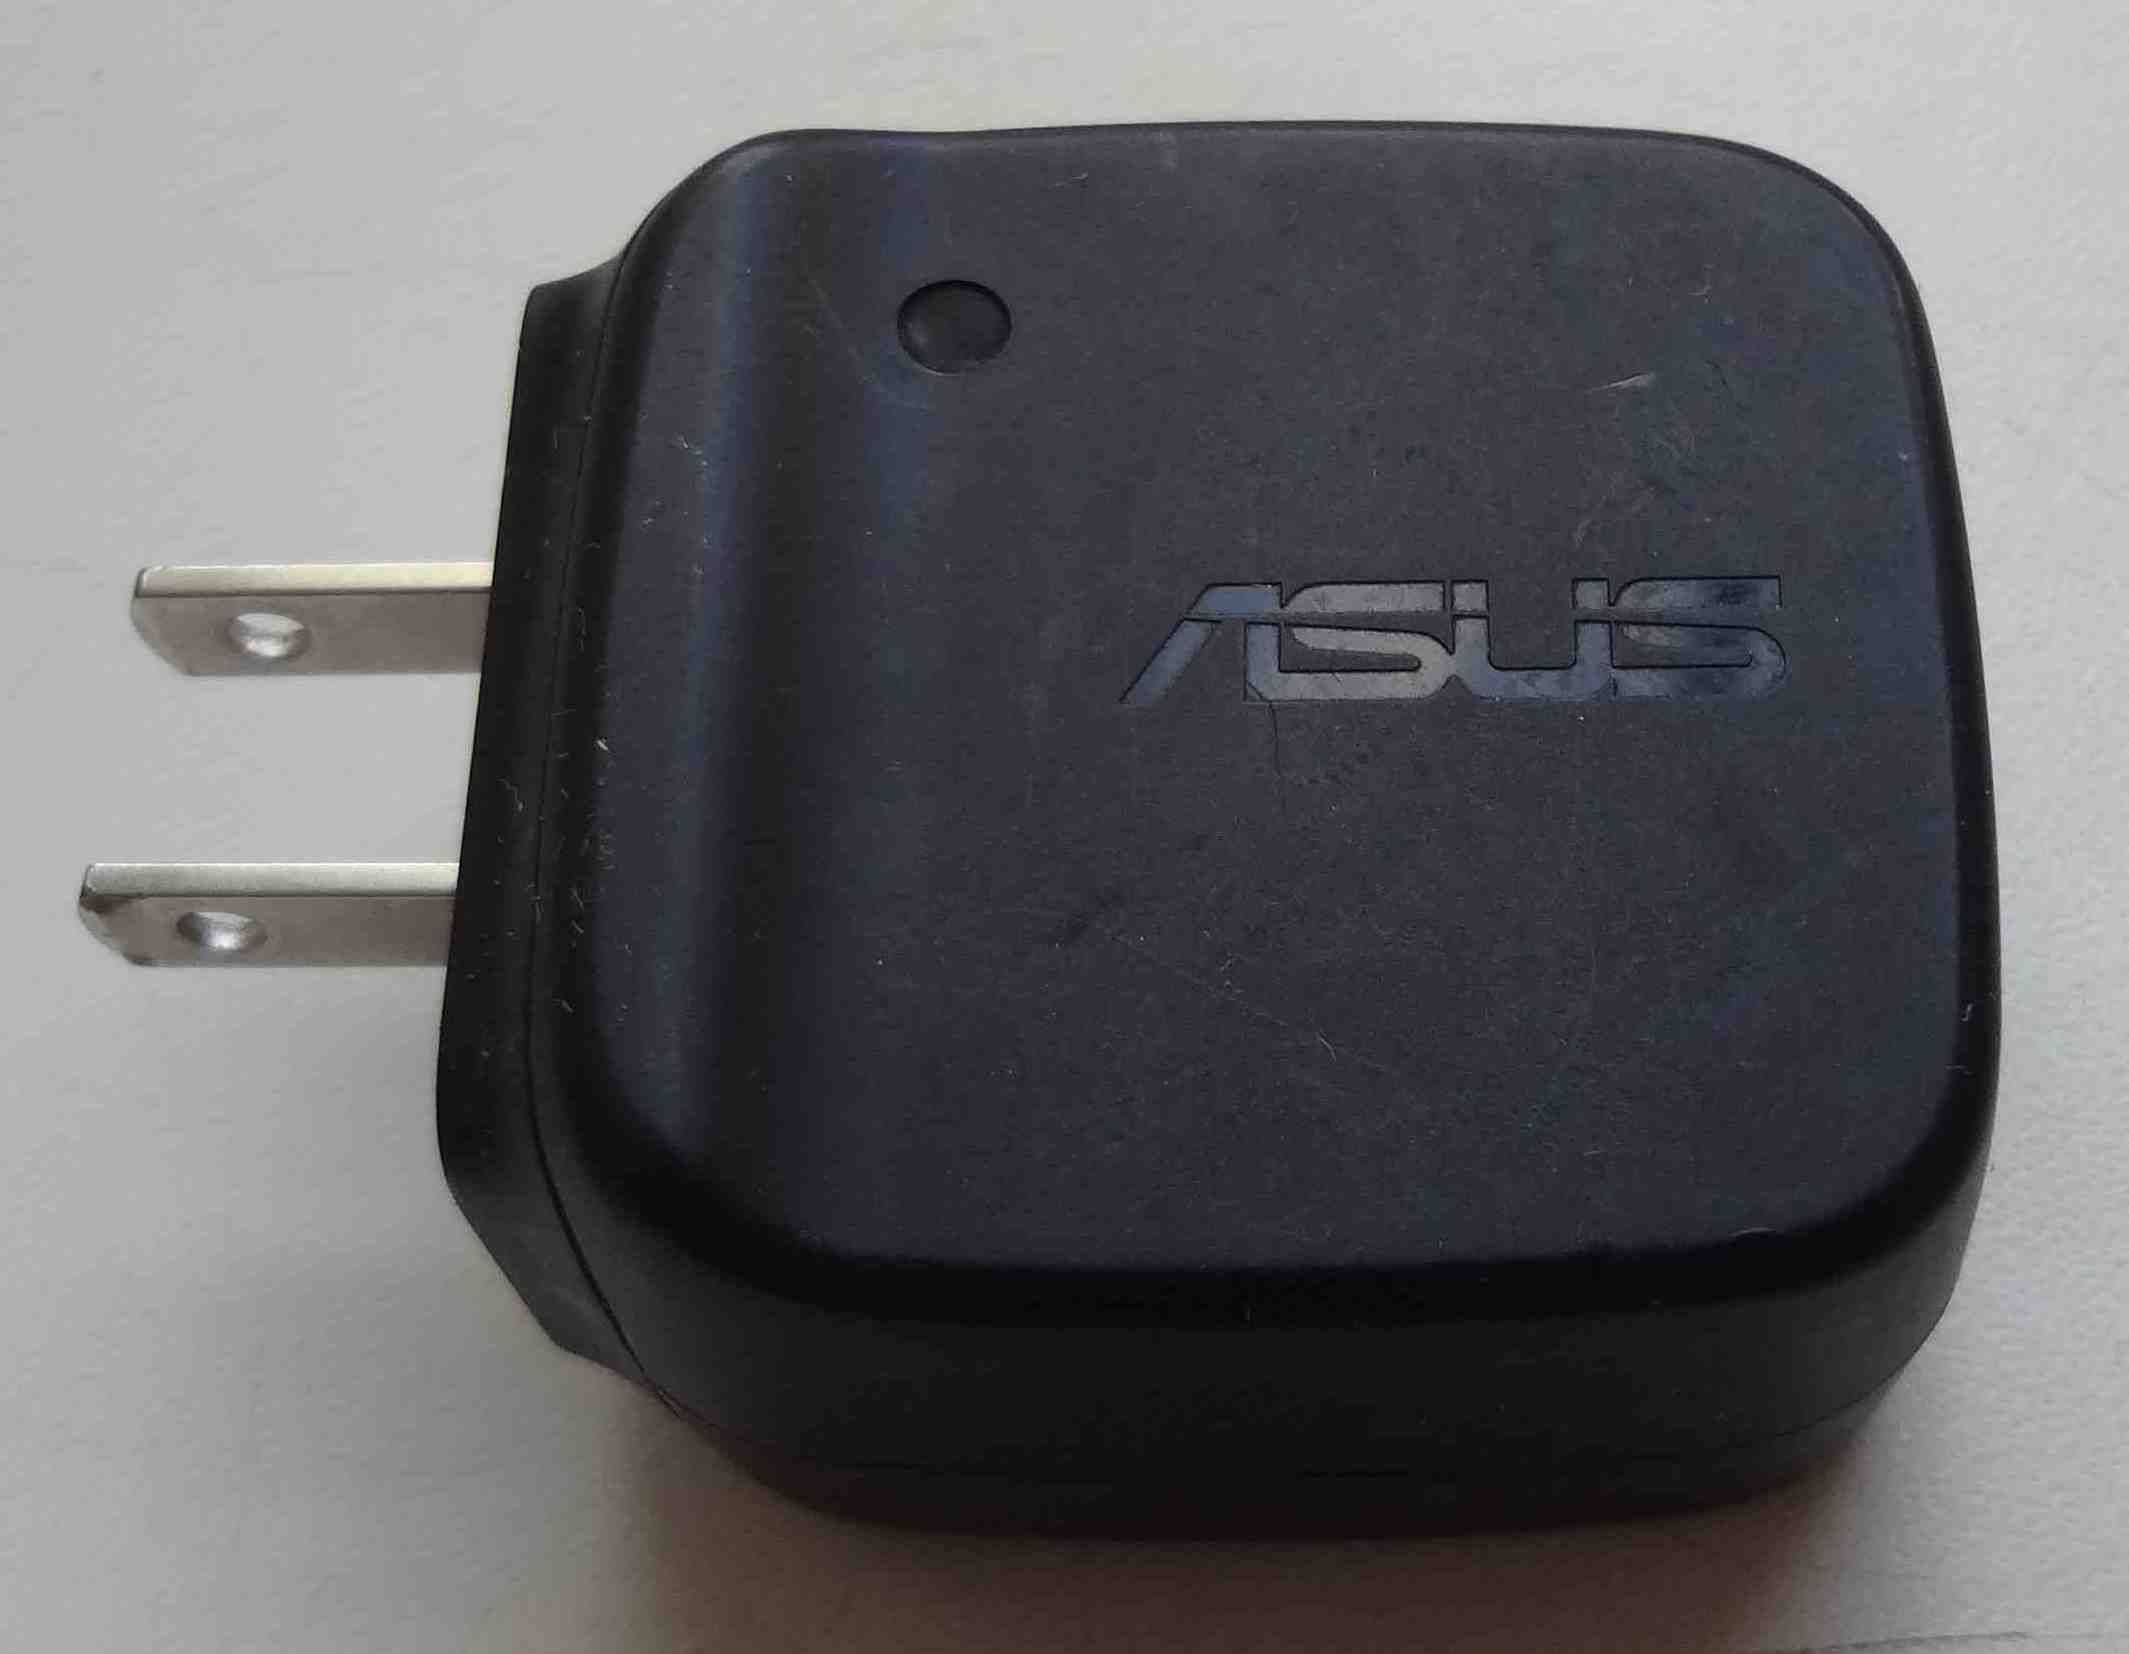 Блок питания ASUS 5V 2A AD8353 с USB портом, адаптер